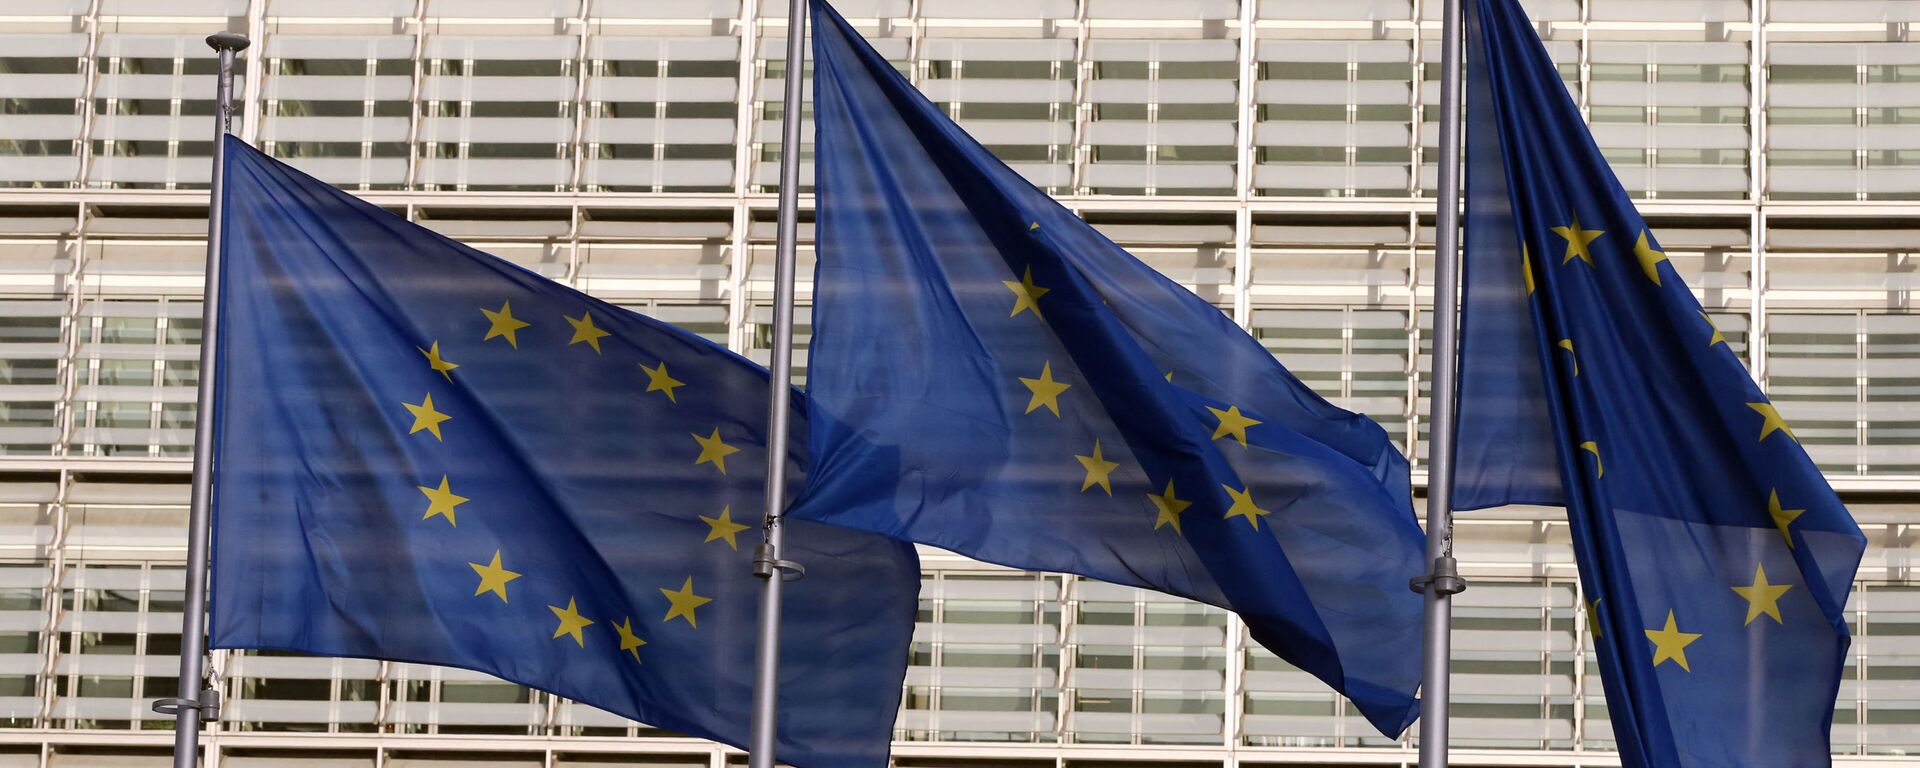 Флаги Европейского союза у штаб-квартиры Европейской комиссии в Брюсселе - Sputnik Lietuva, 1920, 12.03.2021